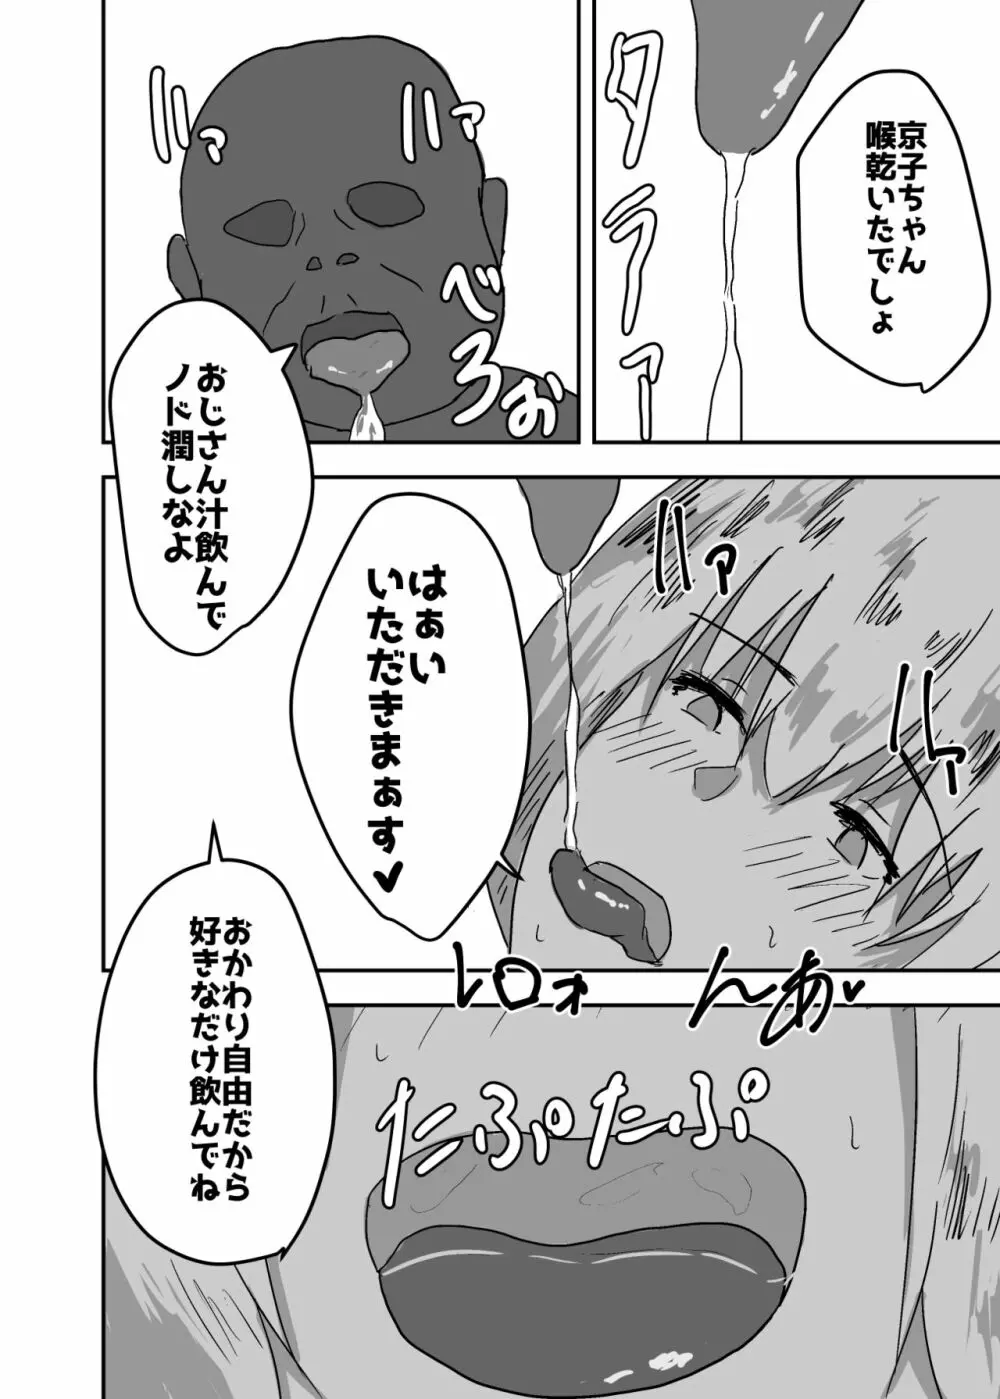 憑依漫画集 - page56